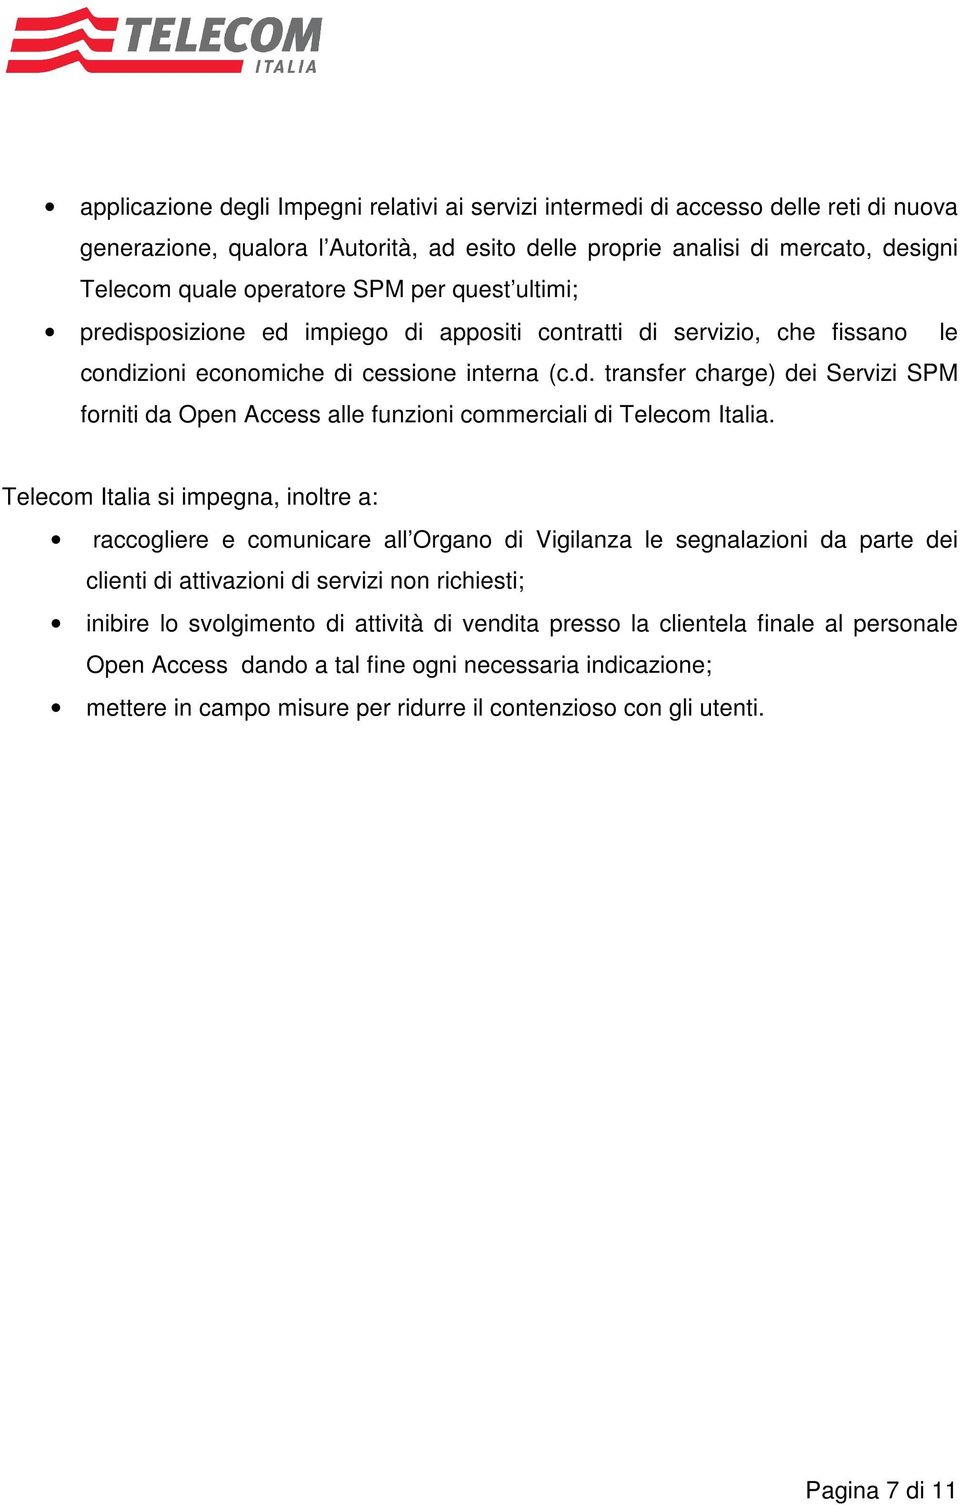 Telecom Italia si impegna, inoltre a: raccogliere e comunicare all Organo di Vigilanza le segnalazioni da parte dei clienti di attivazioni di servizi non richiesti; inibire lo svolgimento di attività